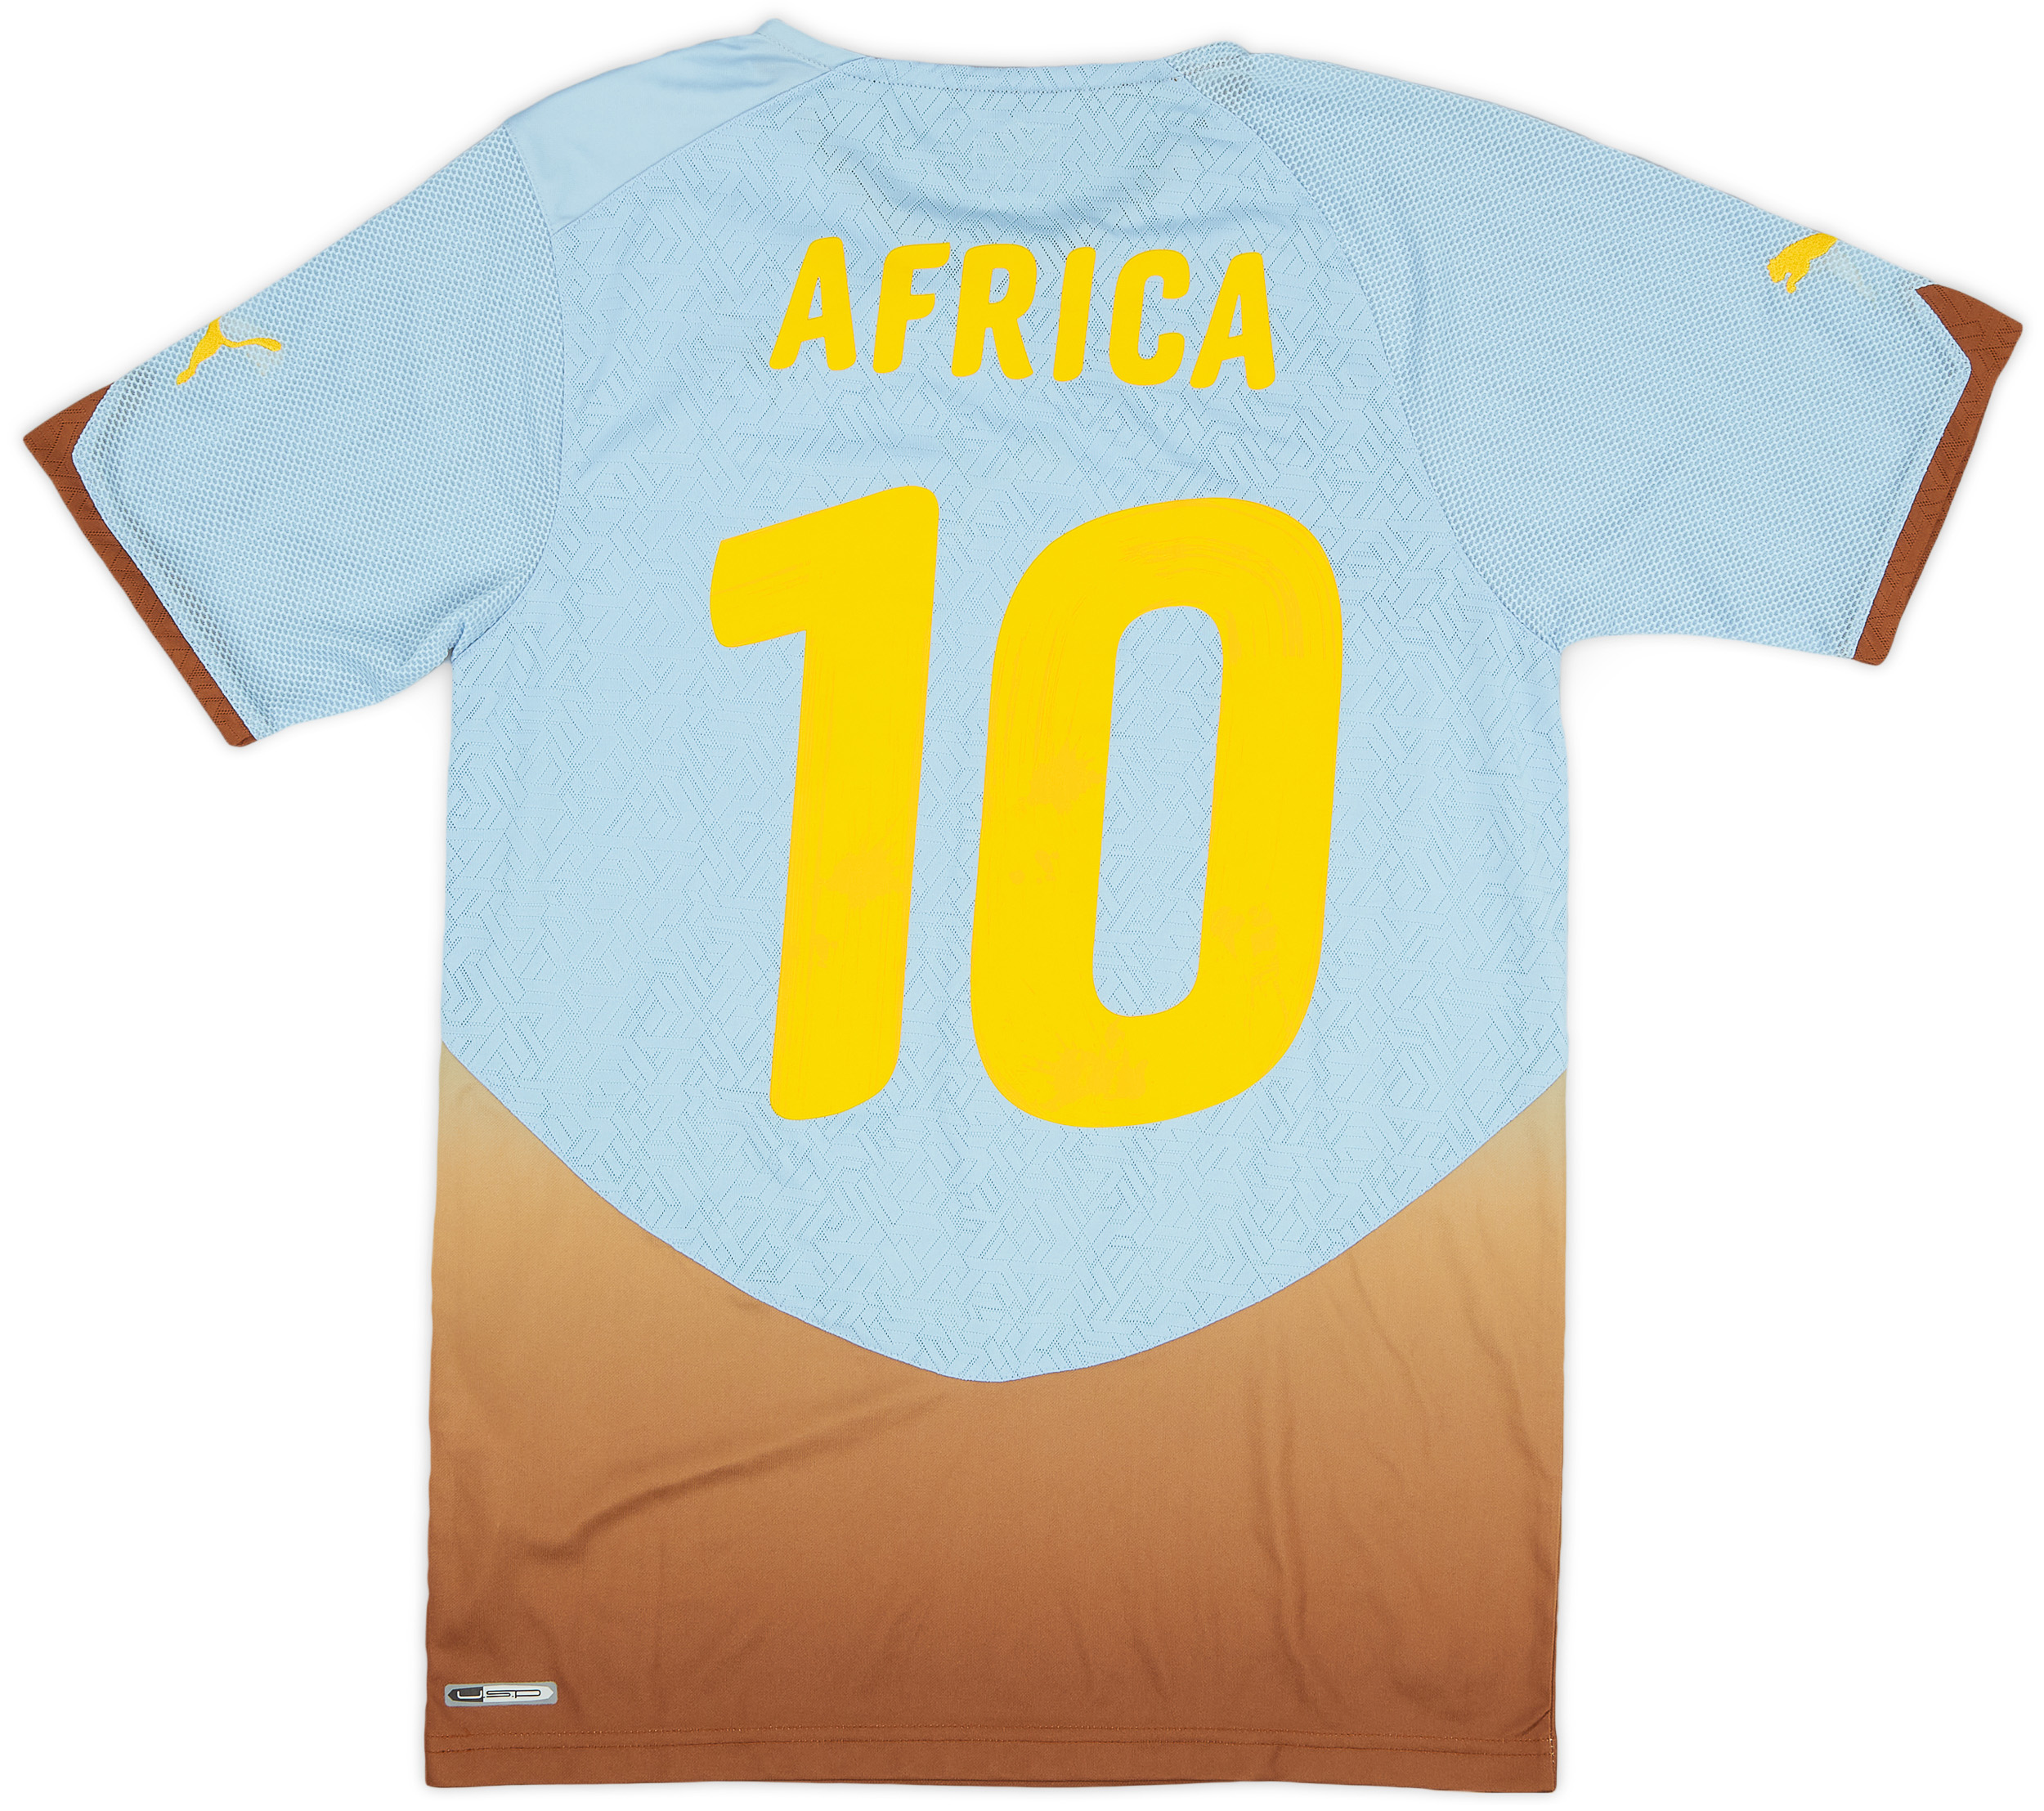 Africa Unity  Derden  shirt  (Original)